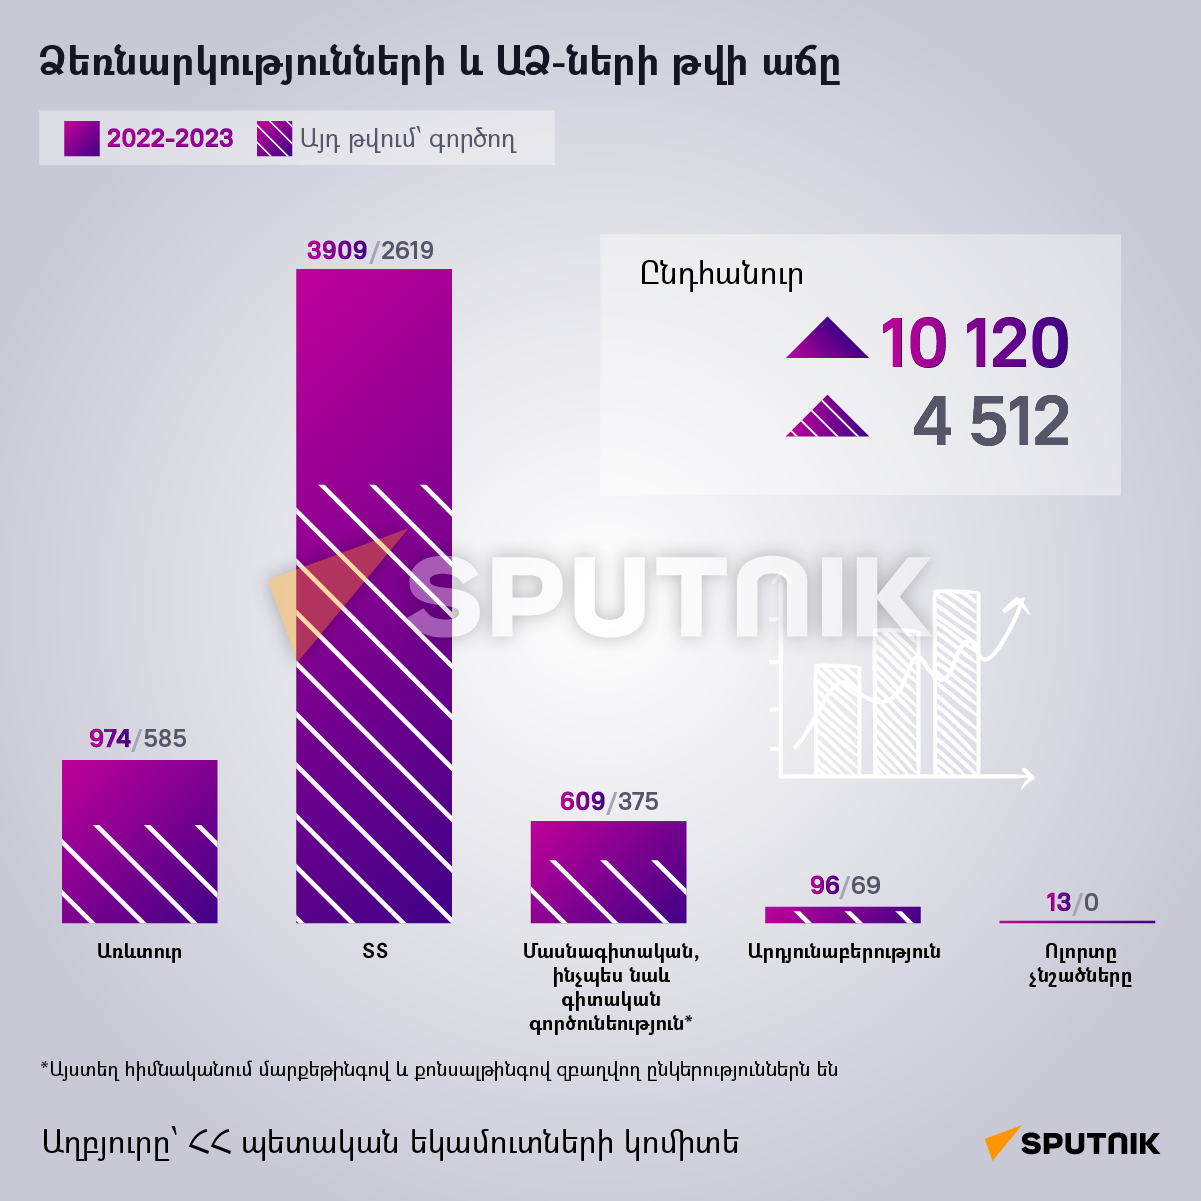 Ձեռնարկությունների և ԱՁ-ների թվի աճը - Sputnik Արմենիա